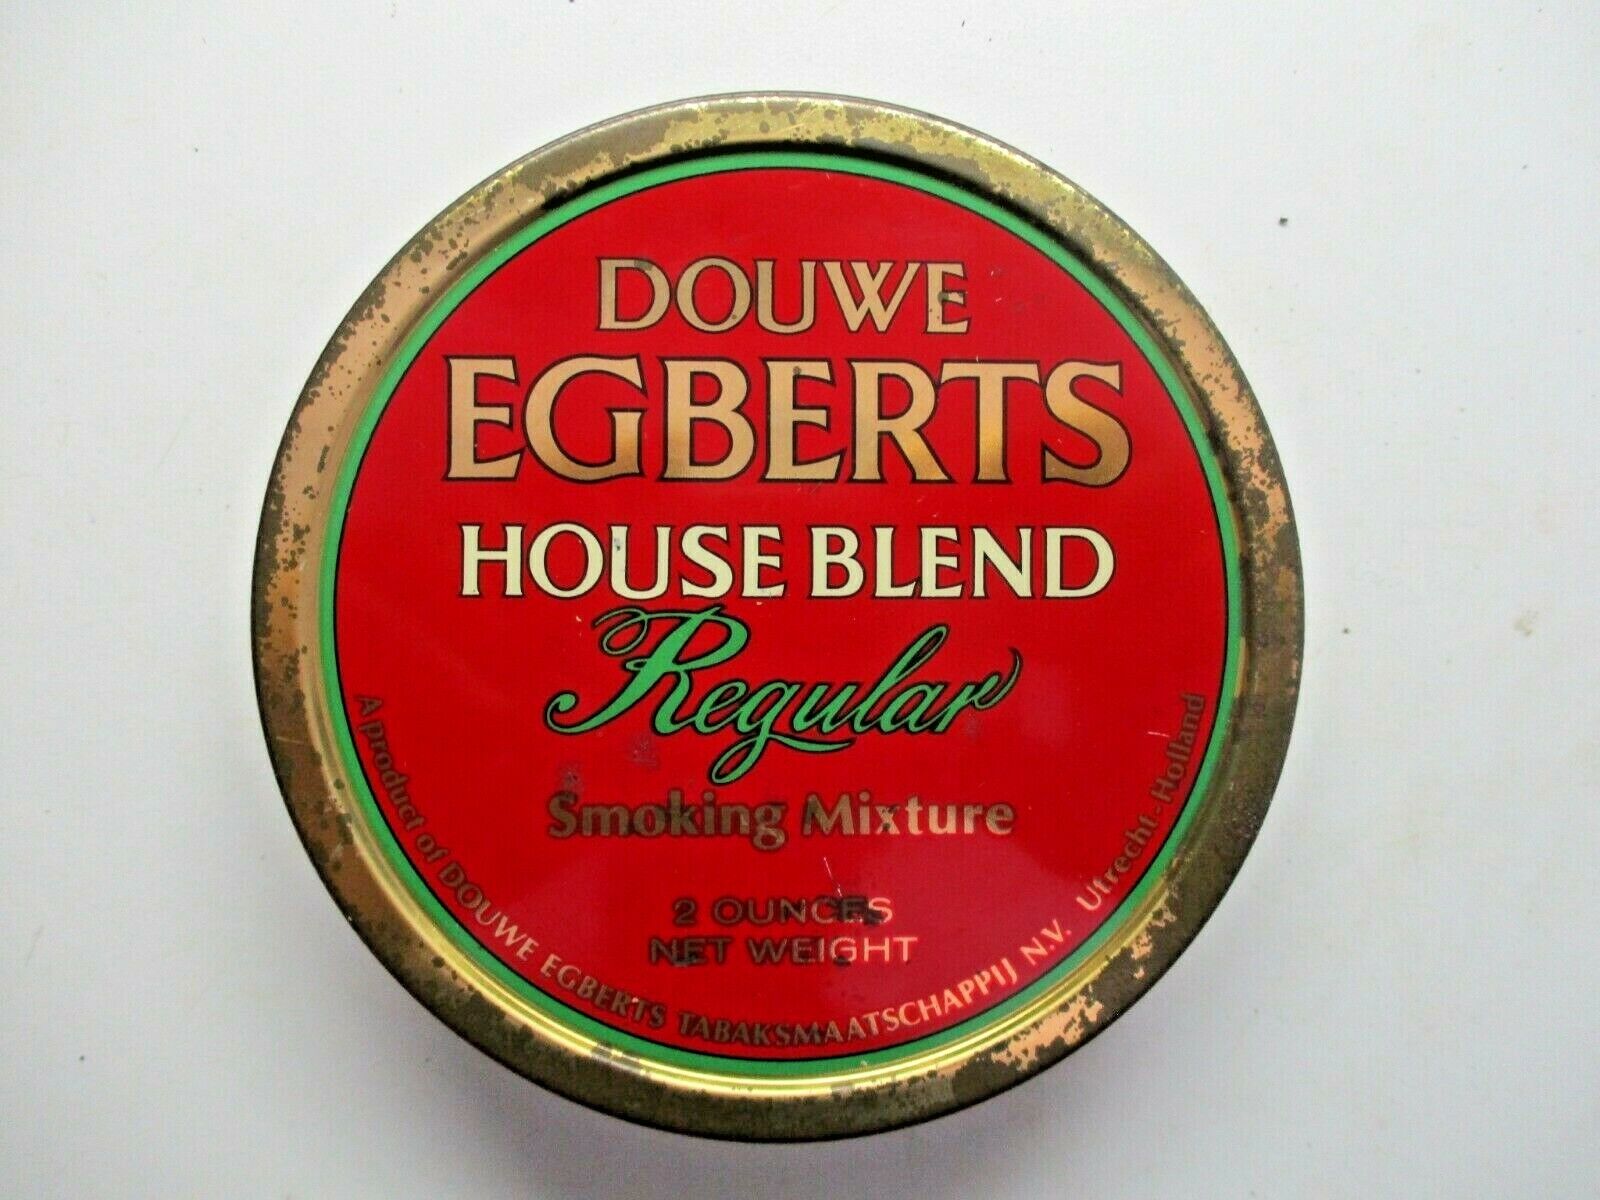 Douwe Egberts Holland House Blend Regular Smoking Mix 2 Oz Tobacco 60 Gram Tabak